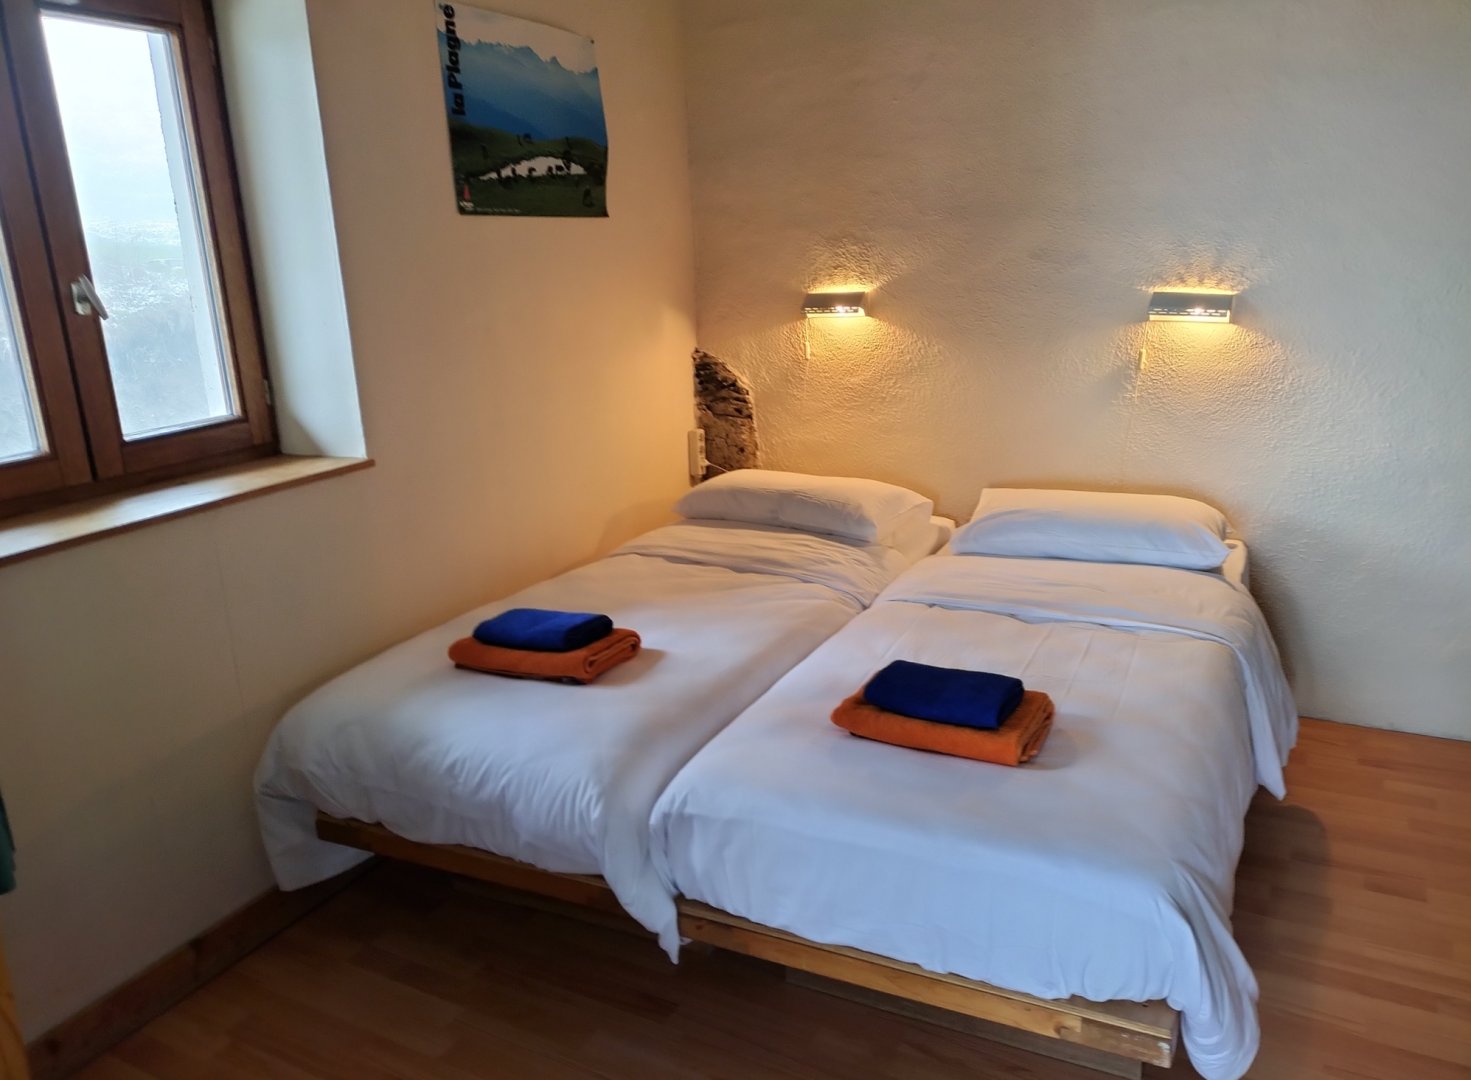 Chambres d'hôtes La Plagne - Chambres et chambres familiales à La Plagne  Tarentaise en Savoie (73)